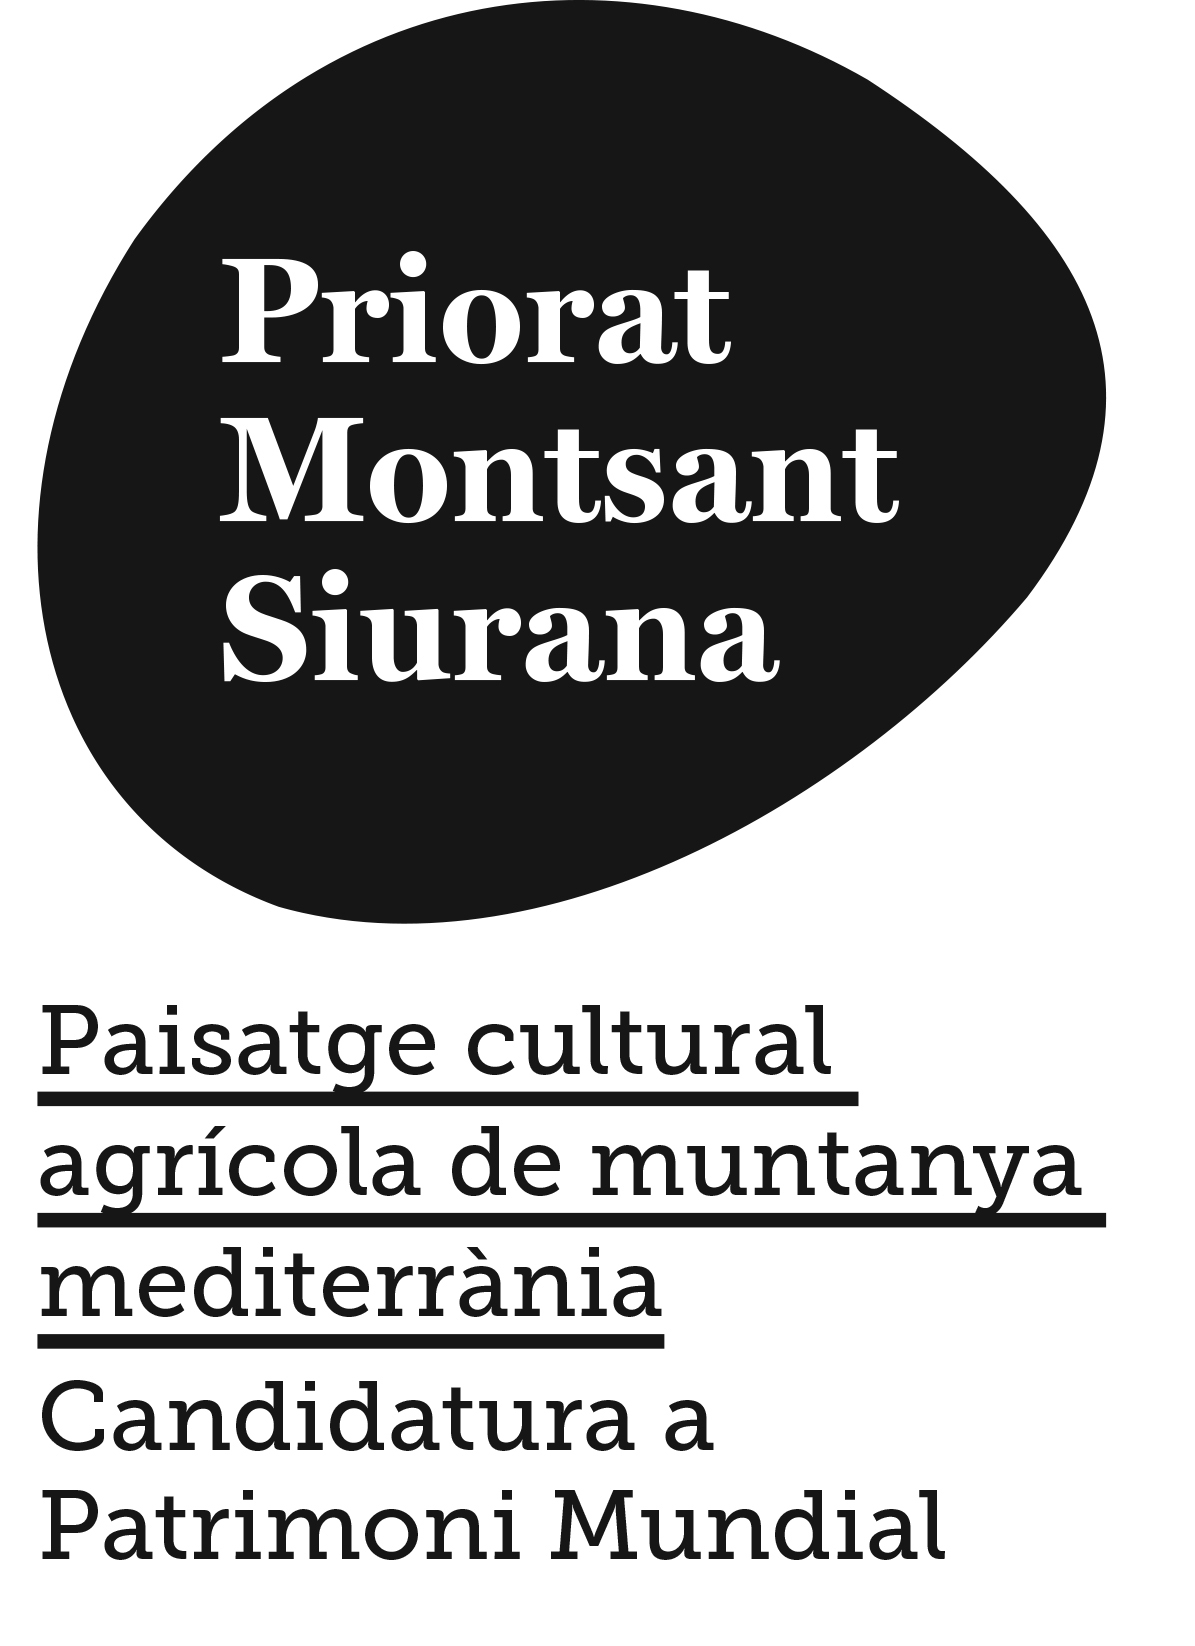 PRIORITAT, Candidatura a Patrimoni Mundial de la Unesco com a paisatge cultural agrícola de muntanya mediterrània